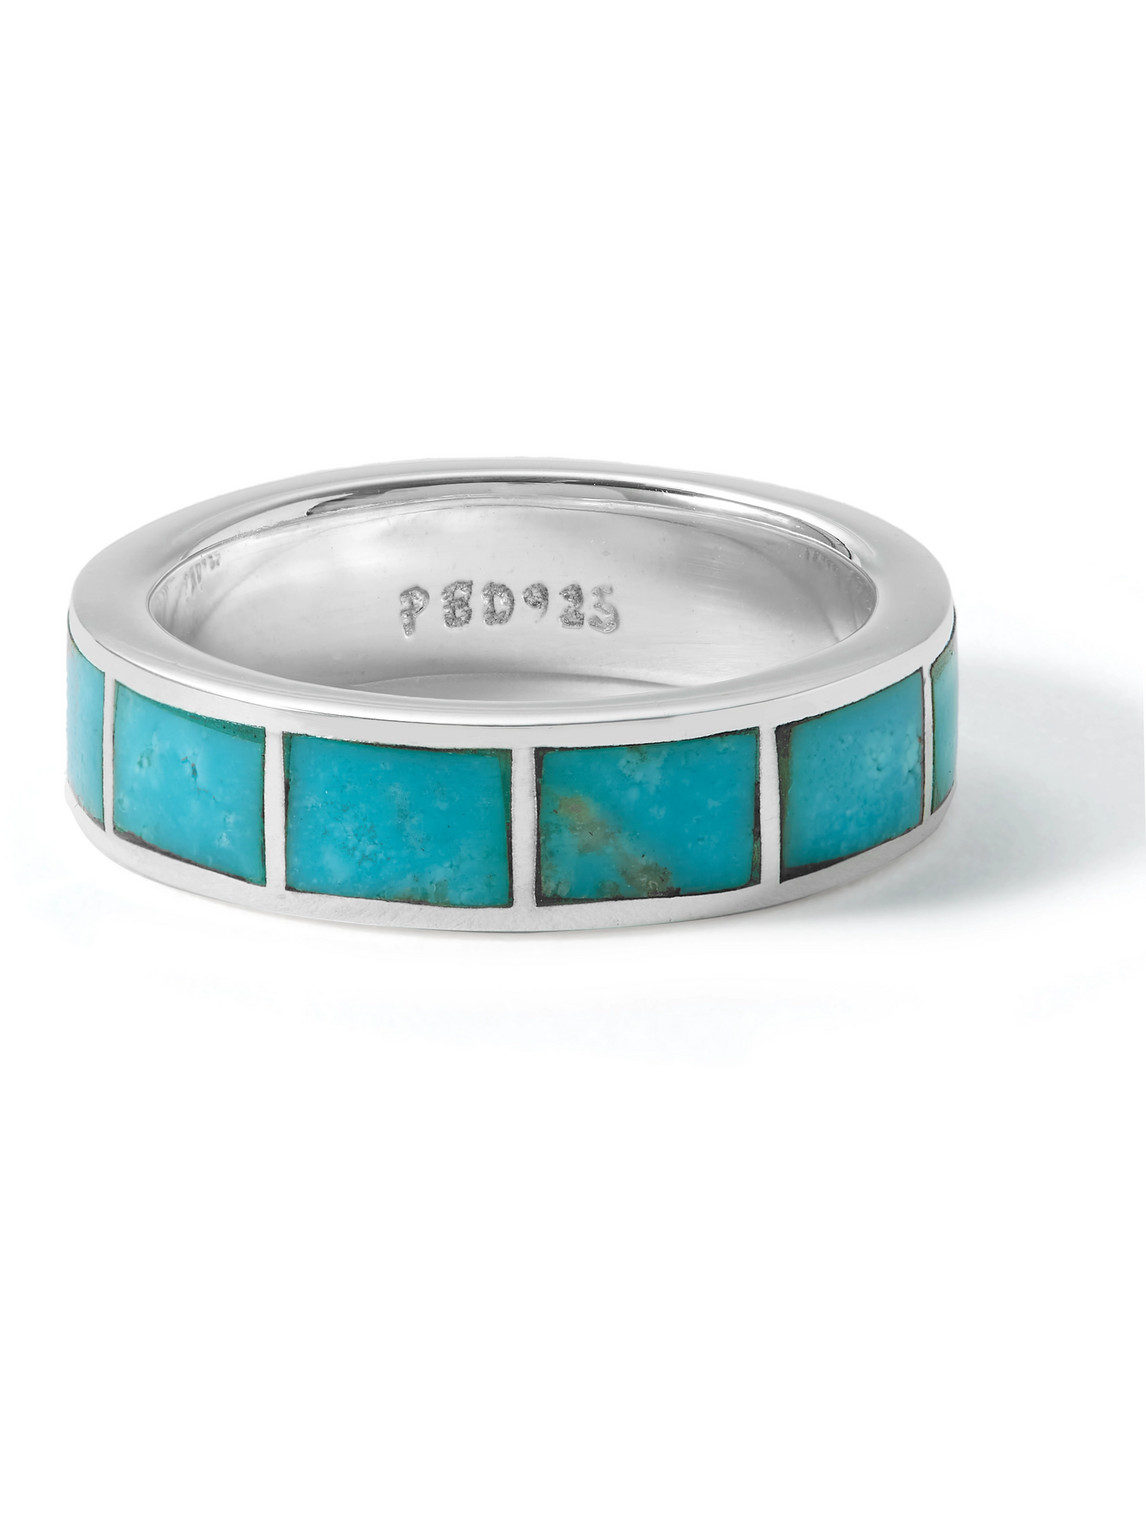 Peyote Bird Paradigm Silver Turquoise Ring